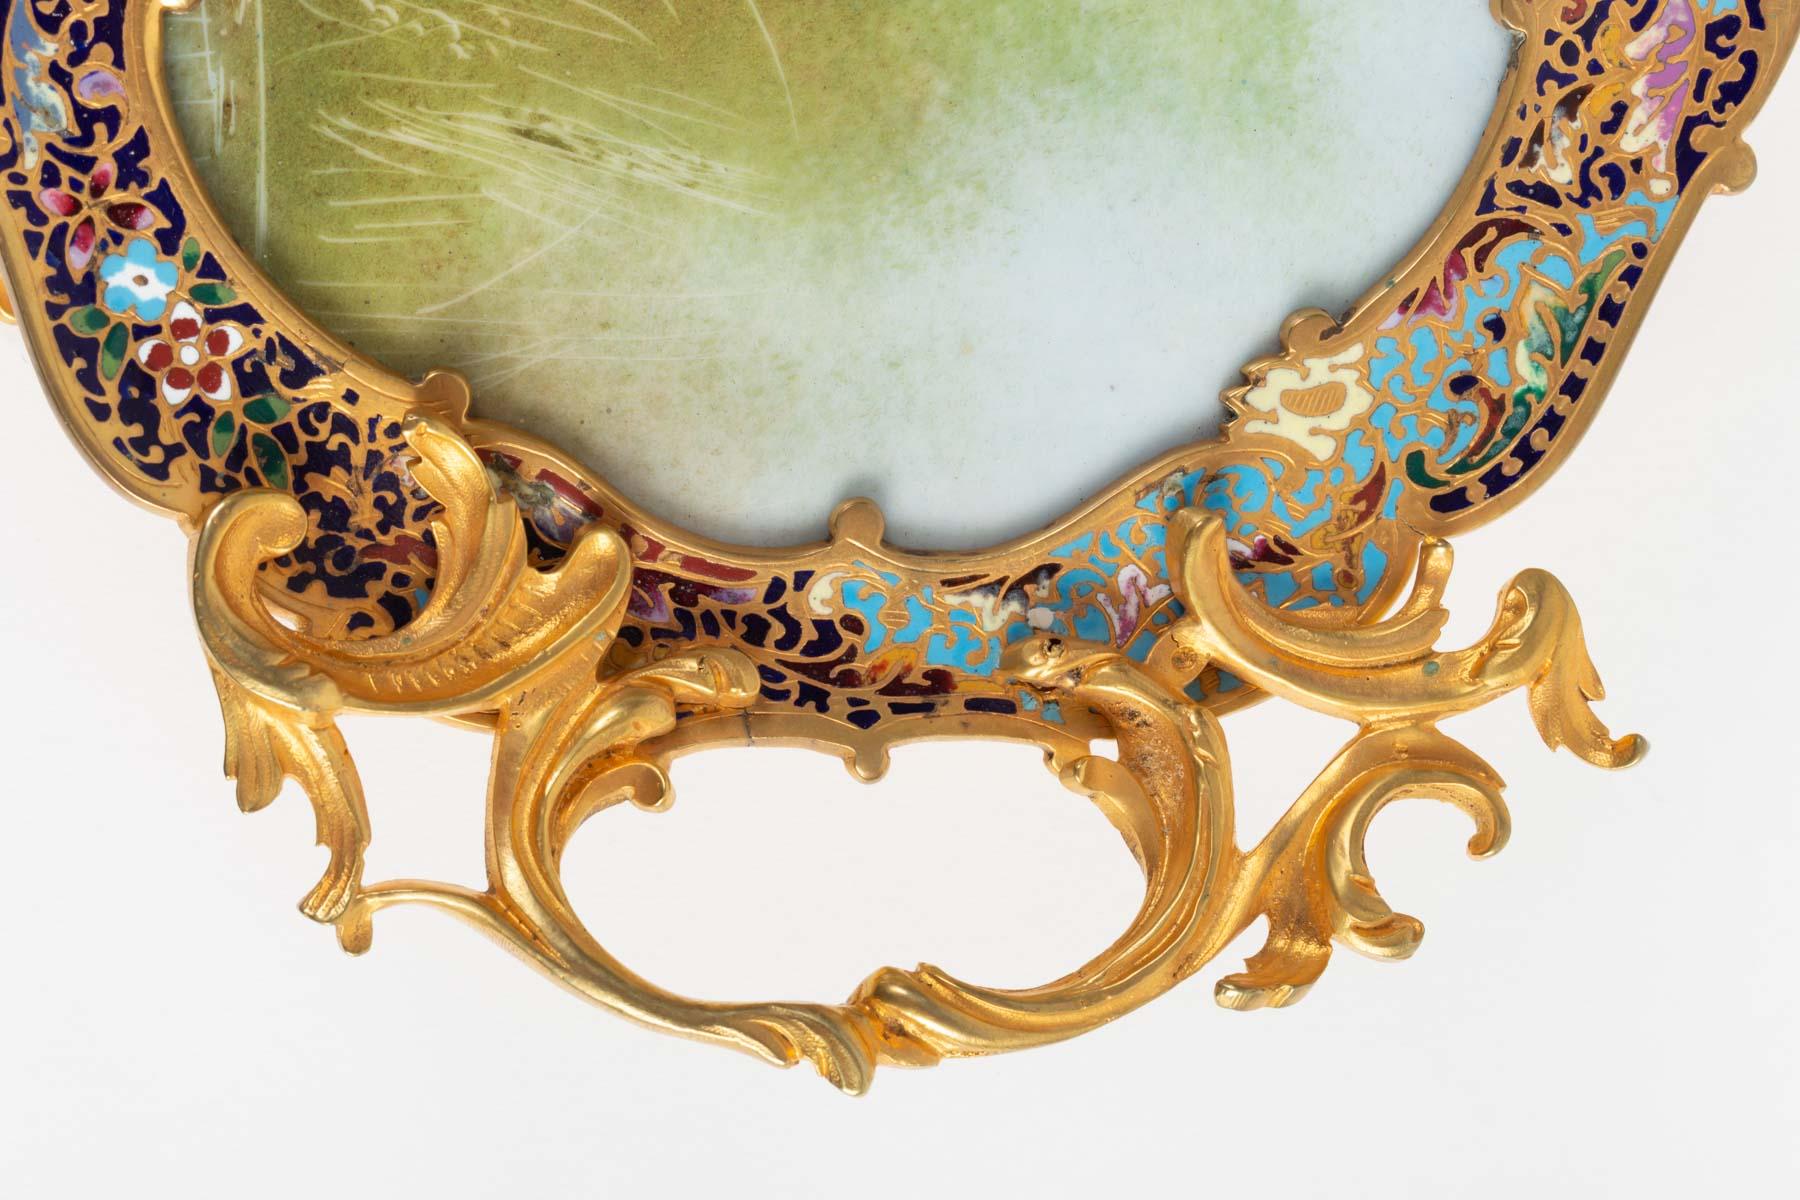 Cloissoné  Golden Bronze Cup, Porcelain and Cloisonné, 19th Century